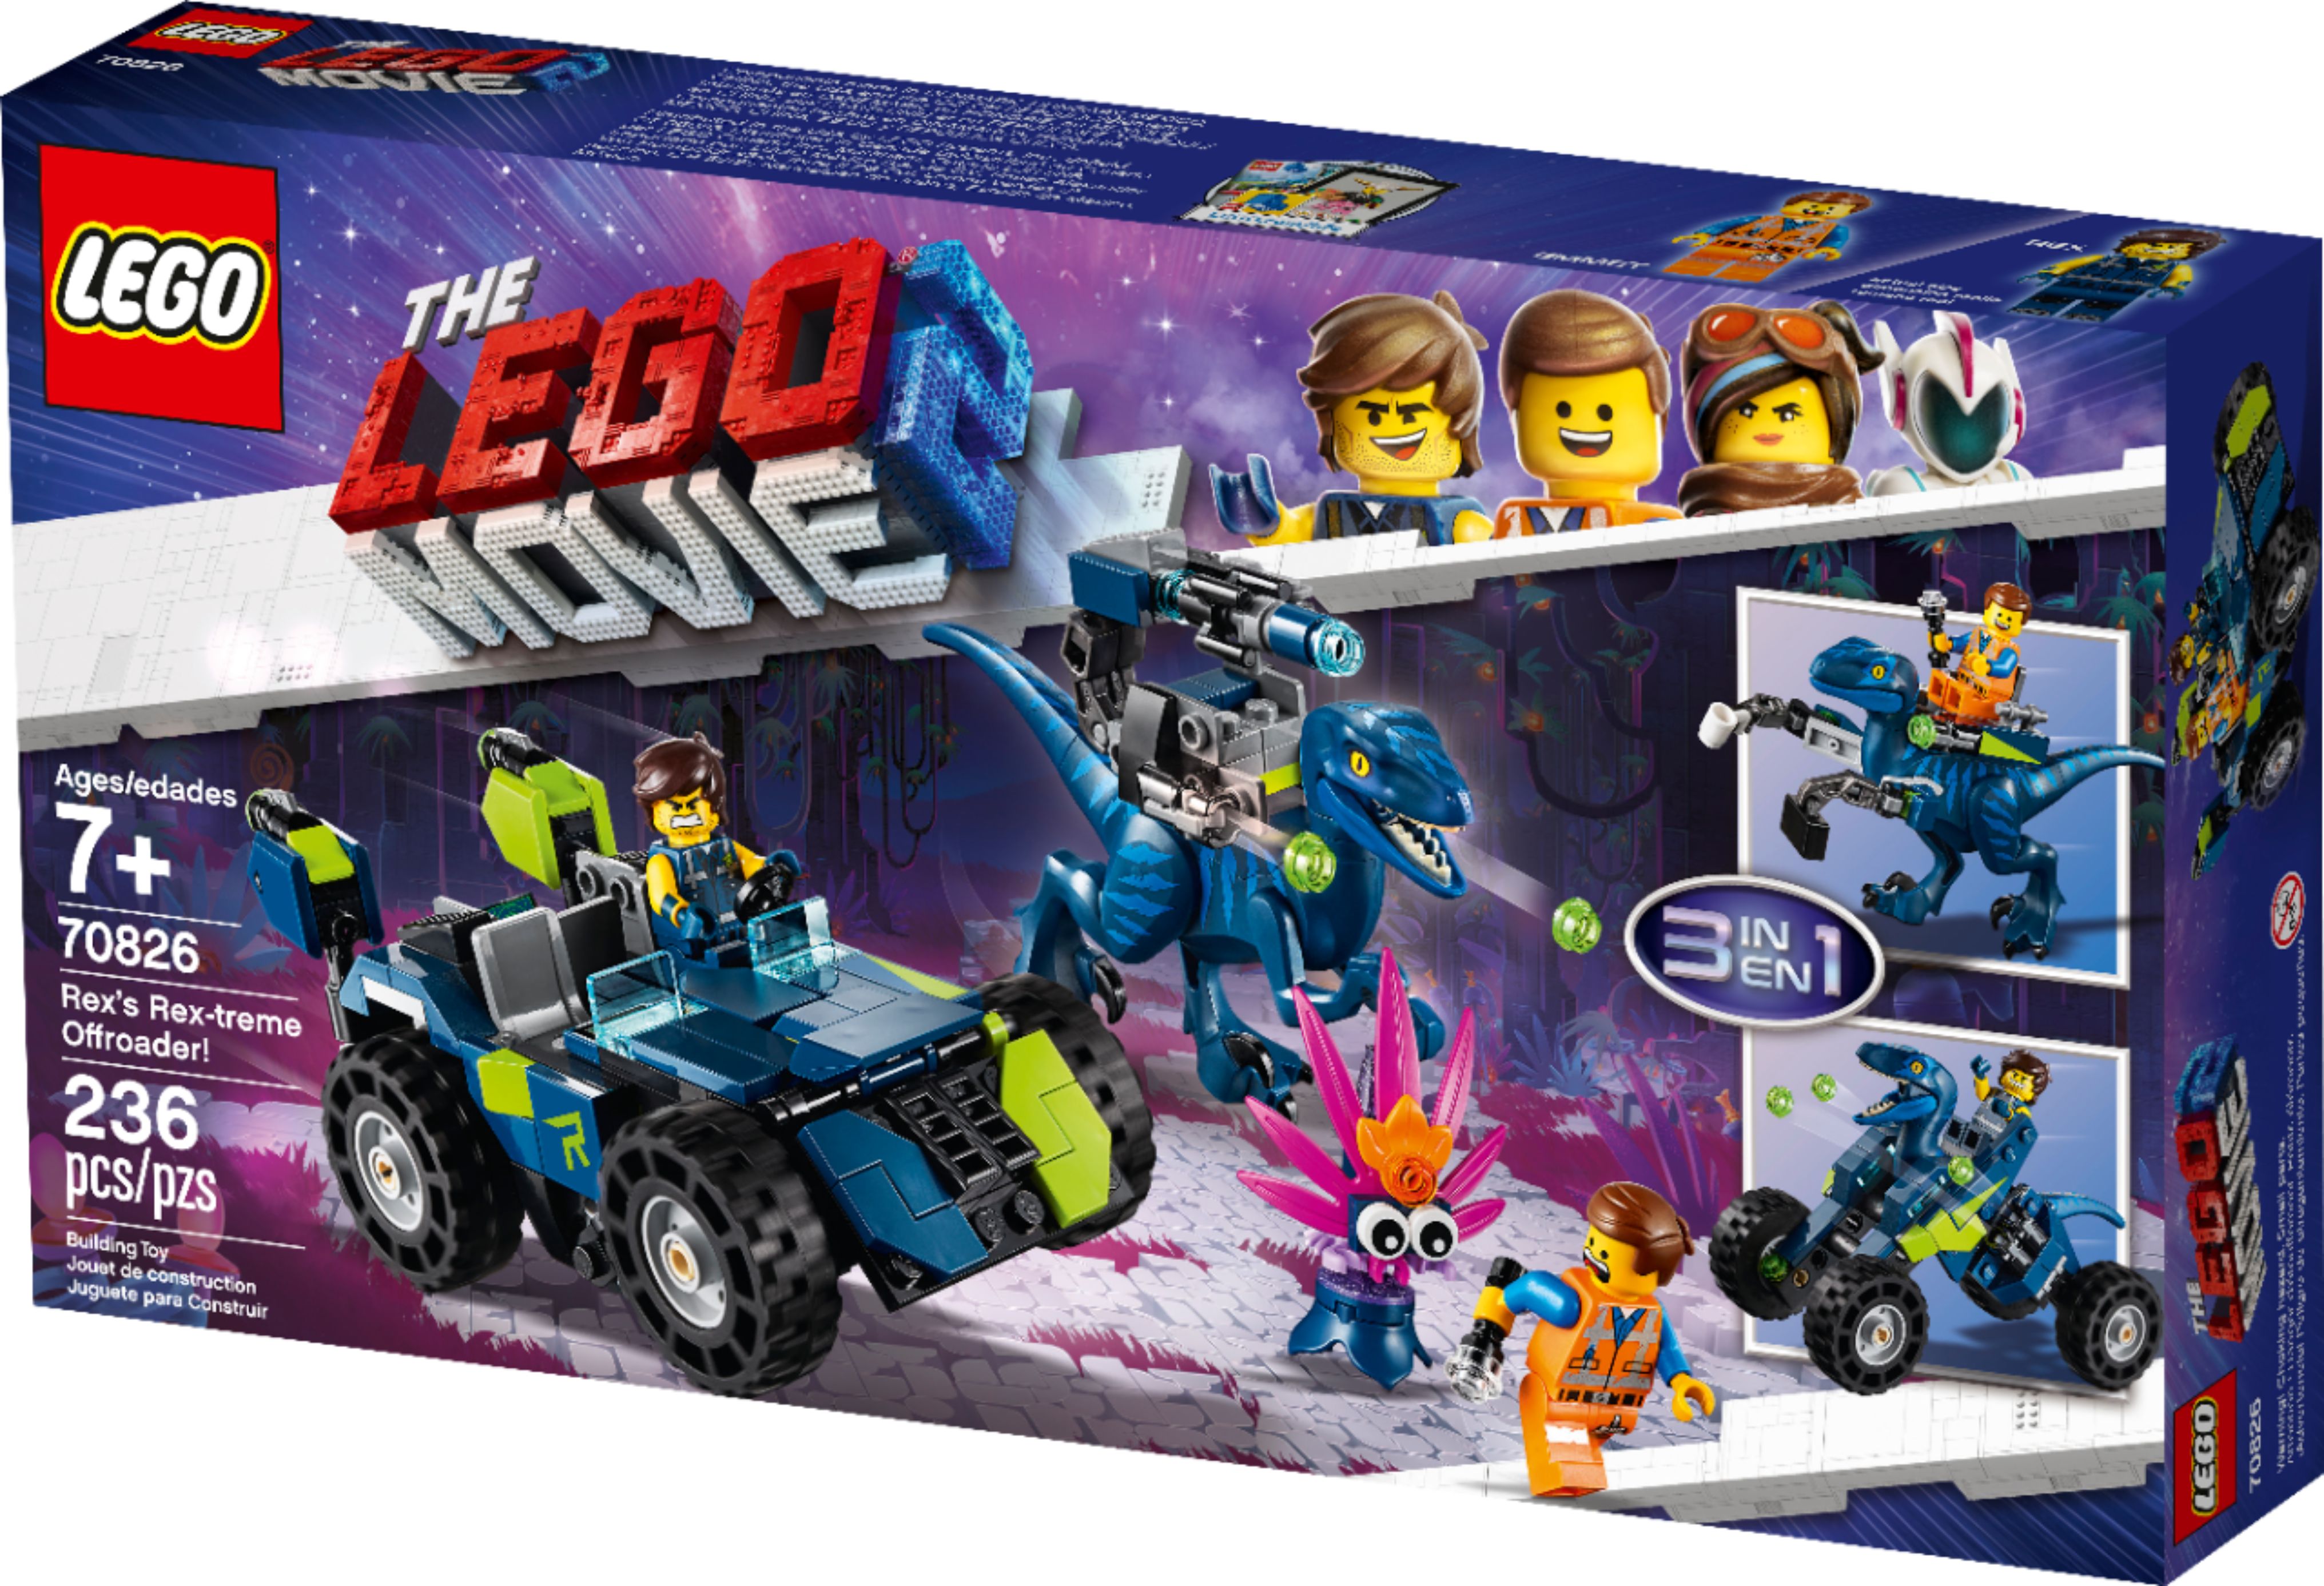 Sammenhængende Næsten død Guggenheim Museum Best Buy: LEGO MOVIE 2 Rex's Rex-treme Offroader! 70826 12345